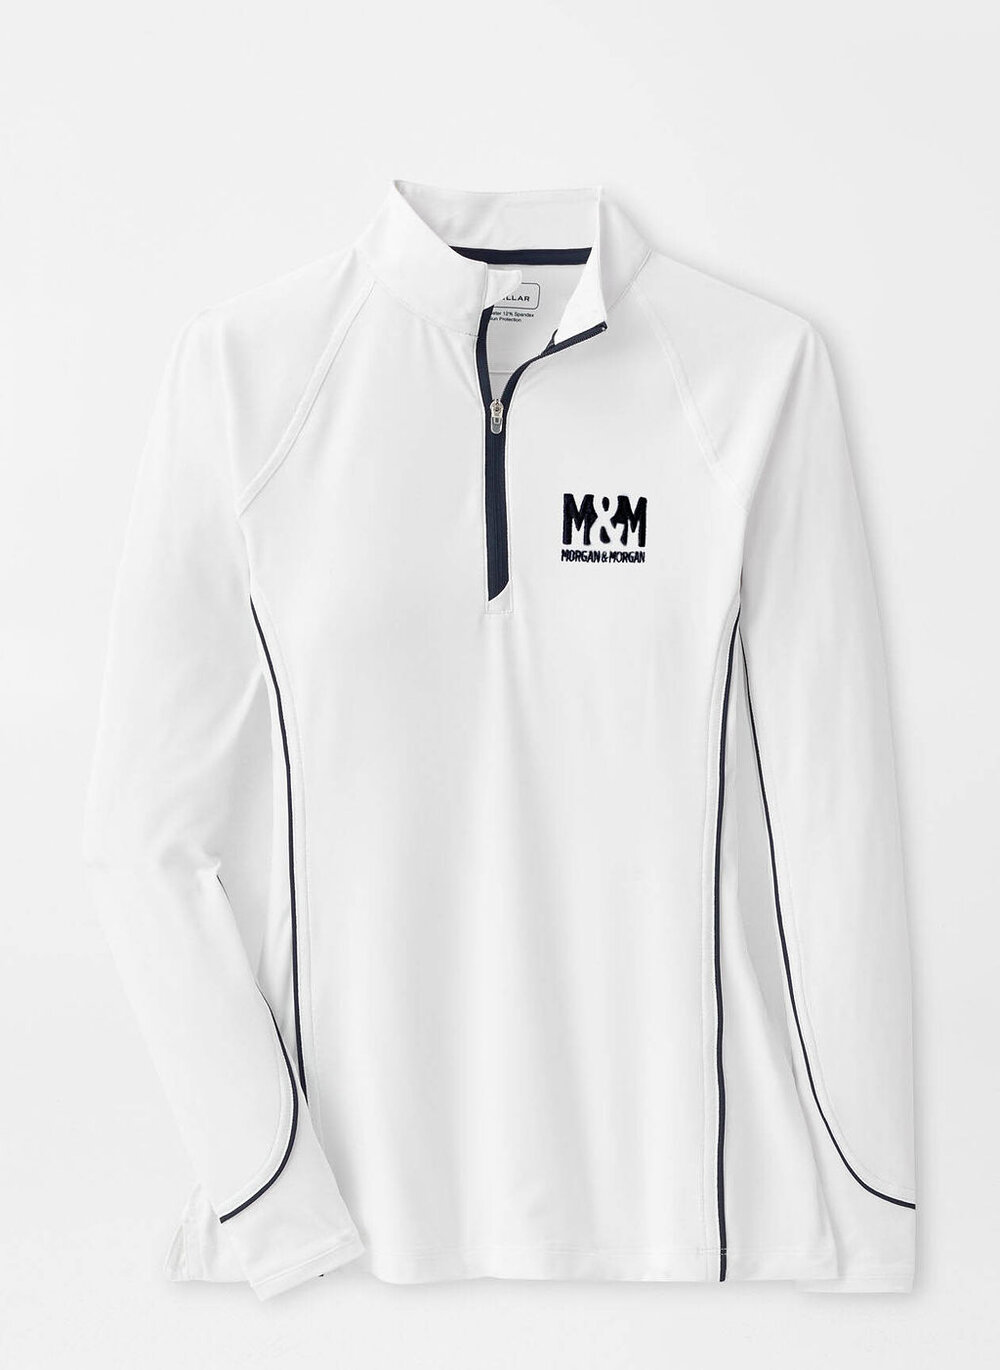 Women's Peter Millar 1/4 Zip sweater — Morgan Swag Shop